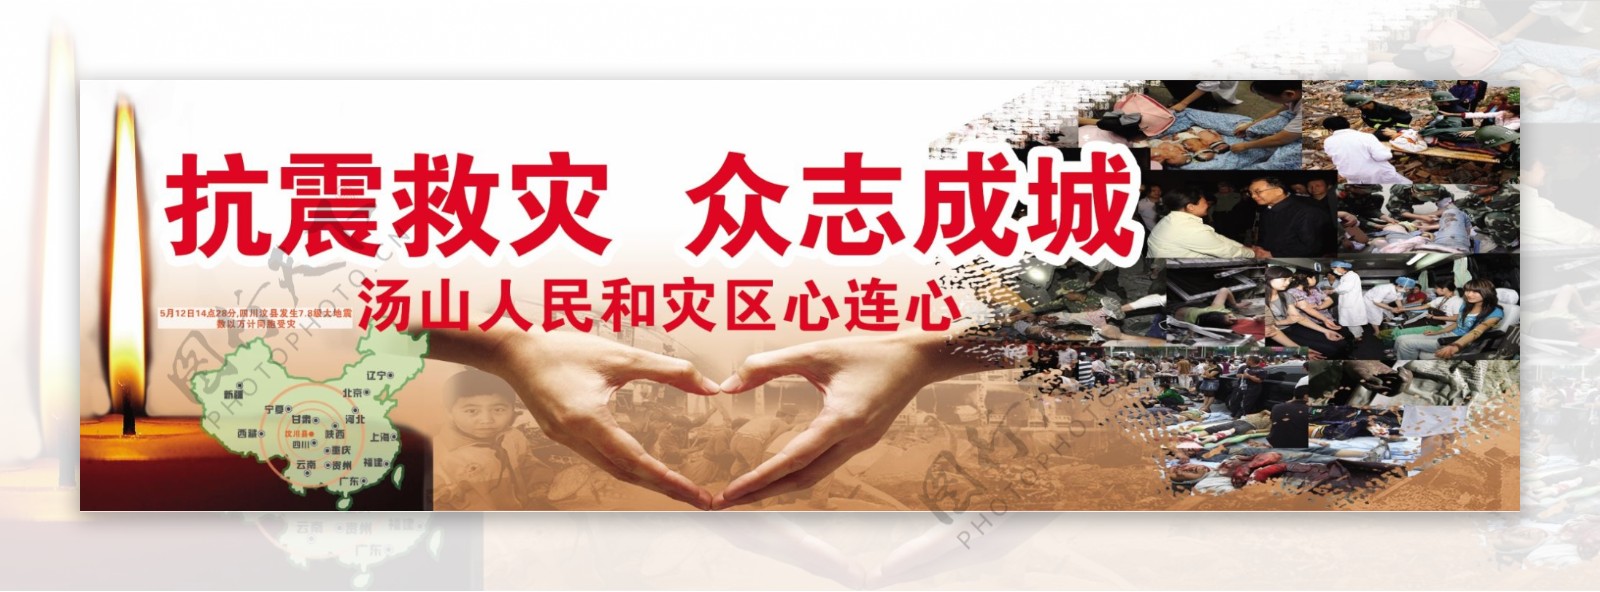 512四川汶川地震公益广告图片